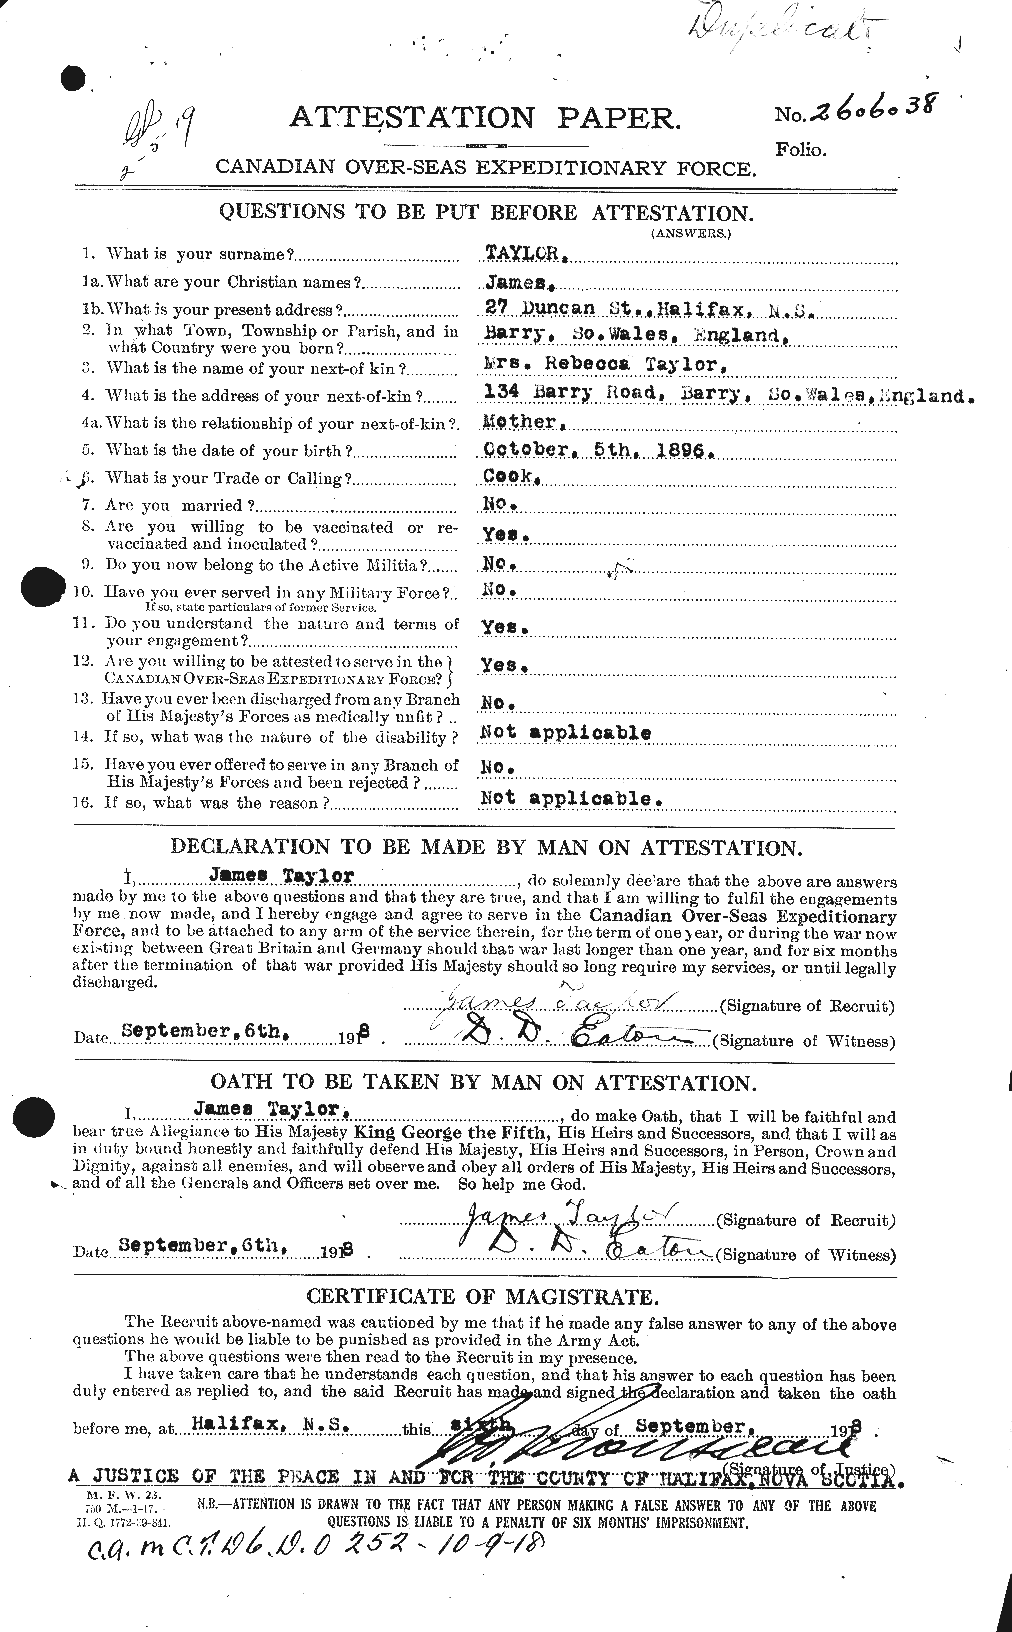 Dossiers du Personnel de la Première Guerre mondiale - CEC 626663a